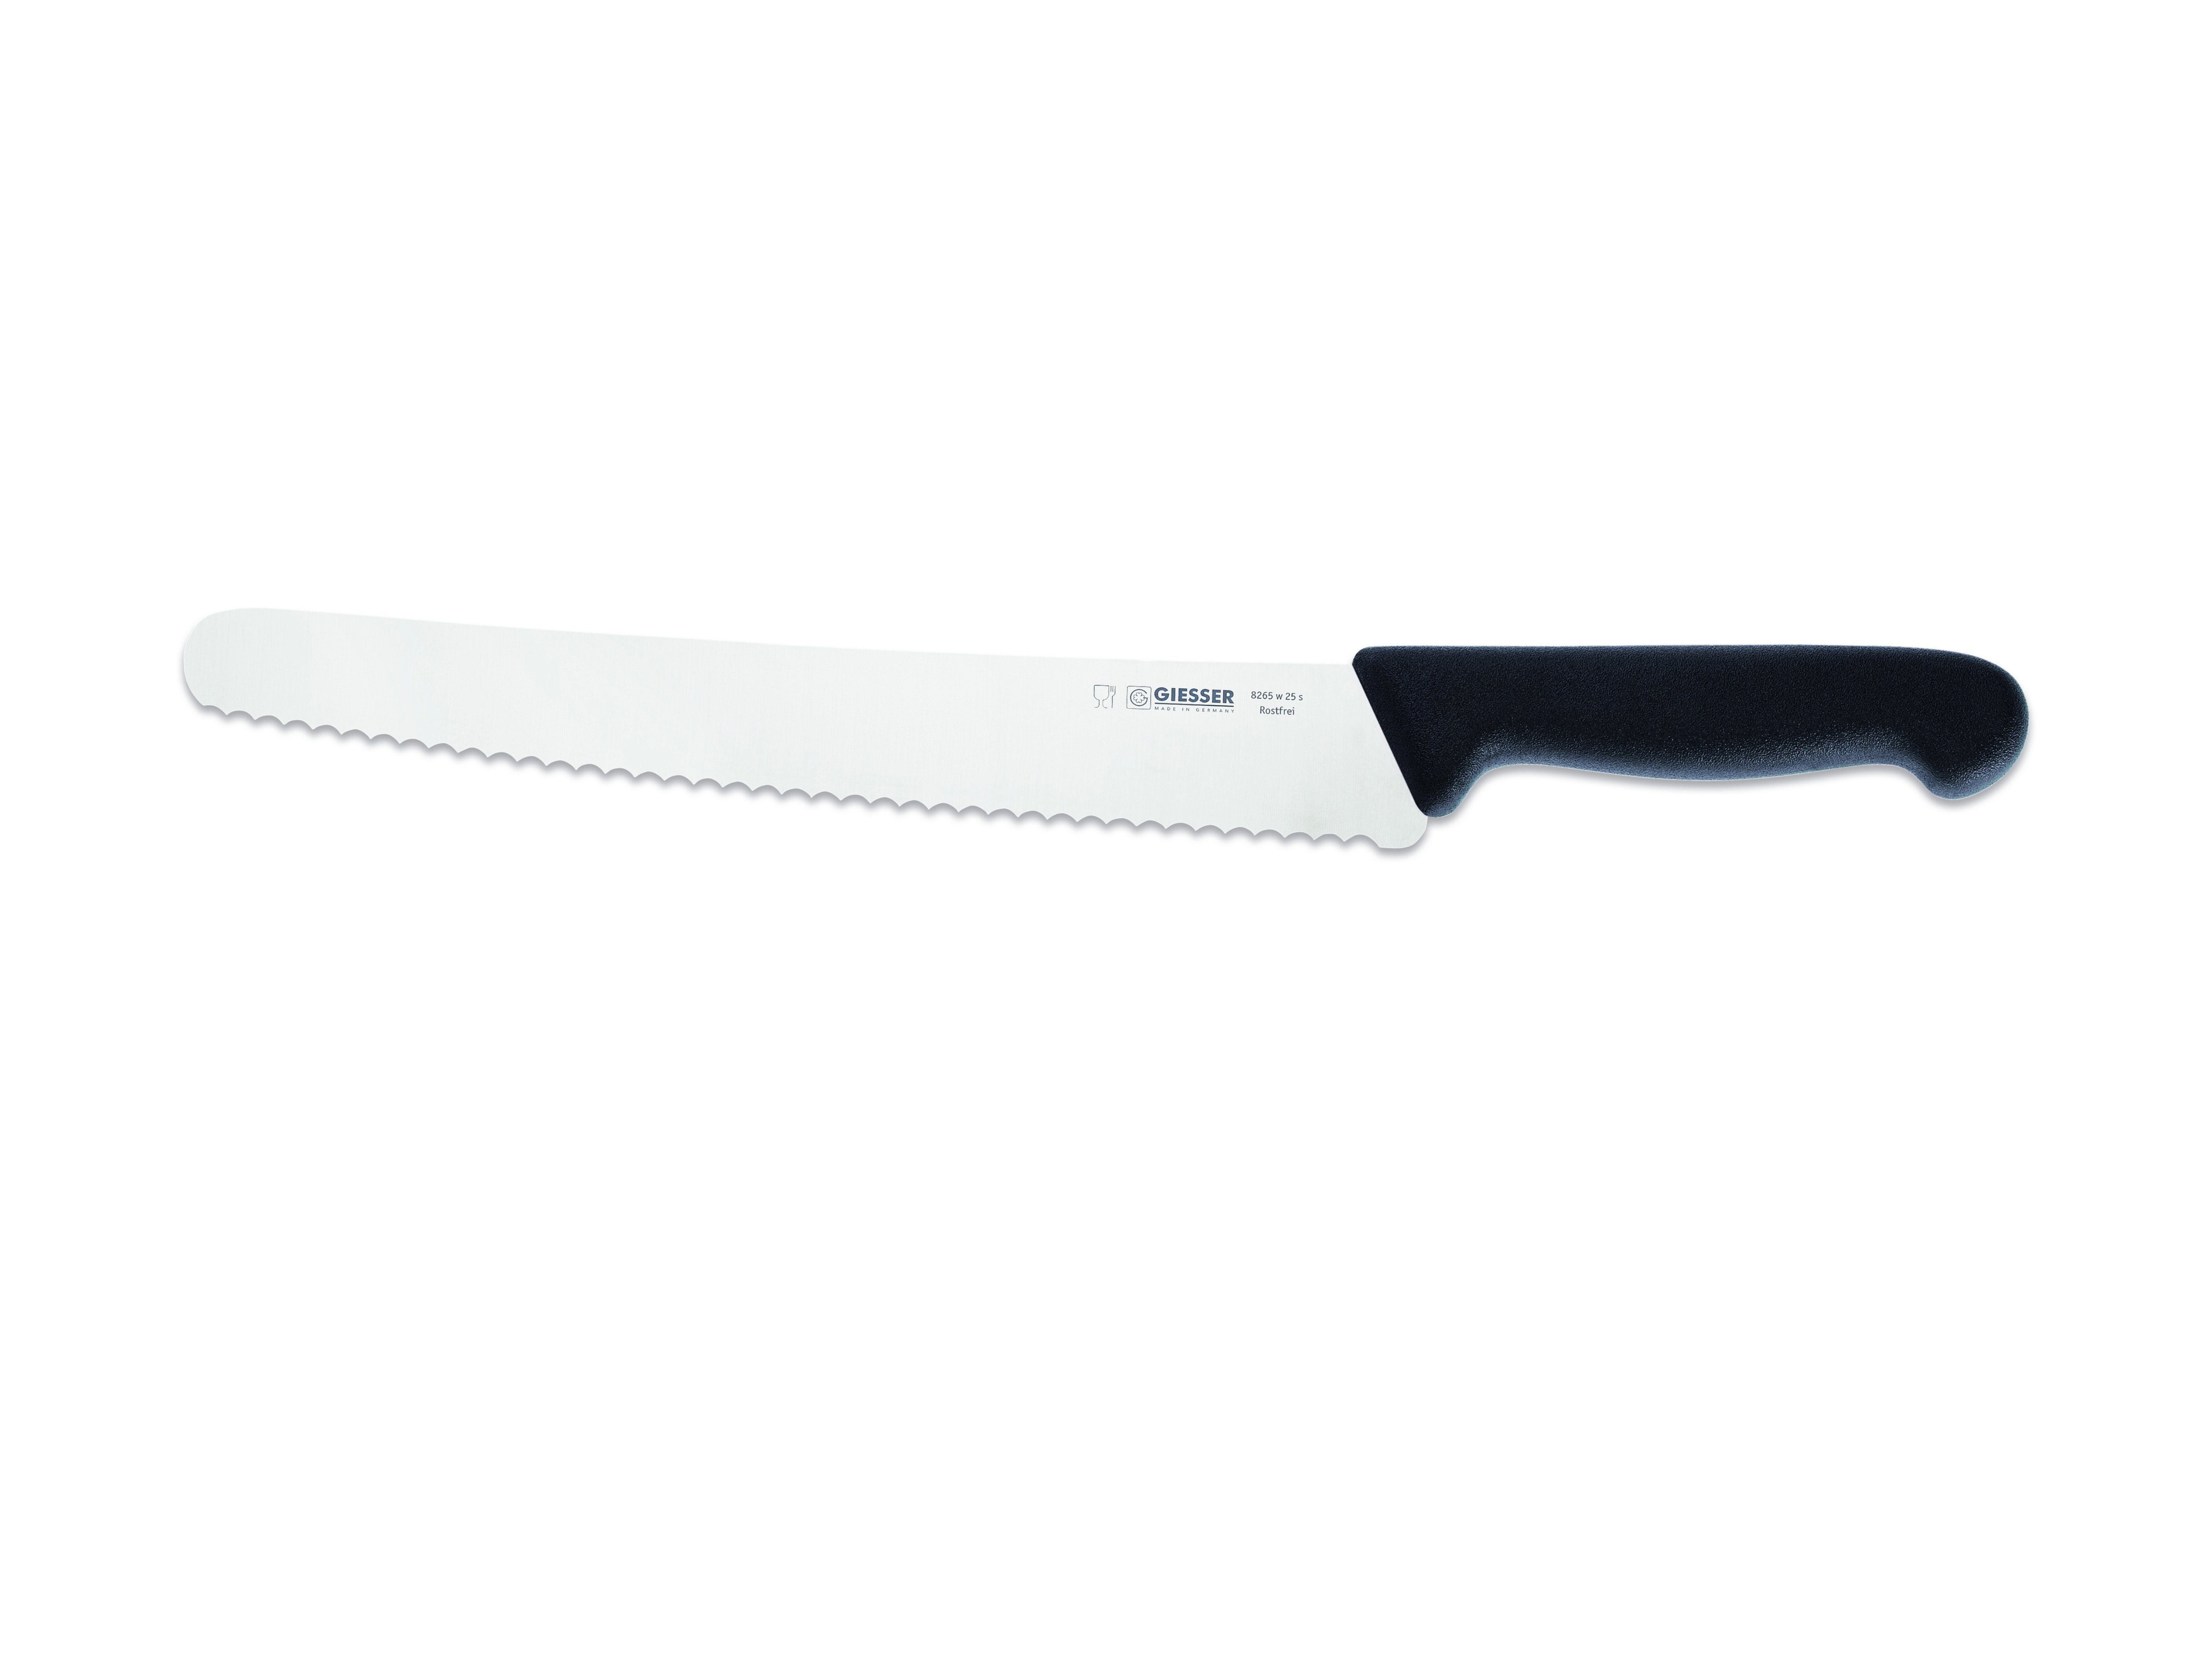 Giesser Messer Brotmesser Universalmesser - kunststoffgespritzt Welle links 8265 w 25, schwarz